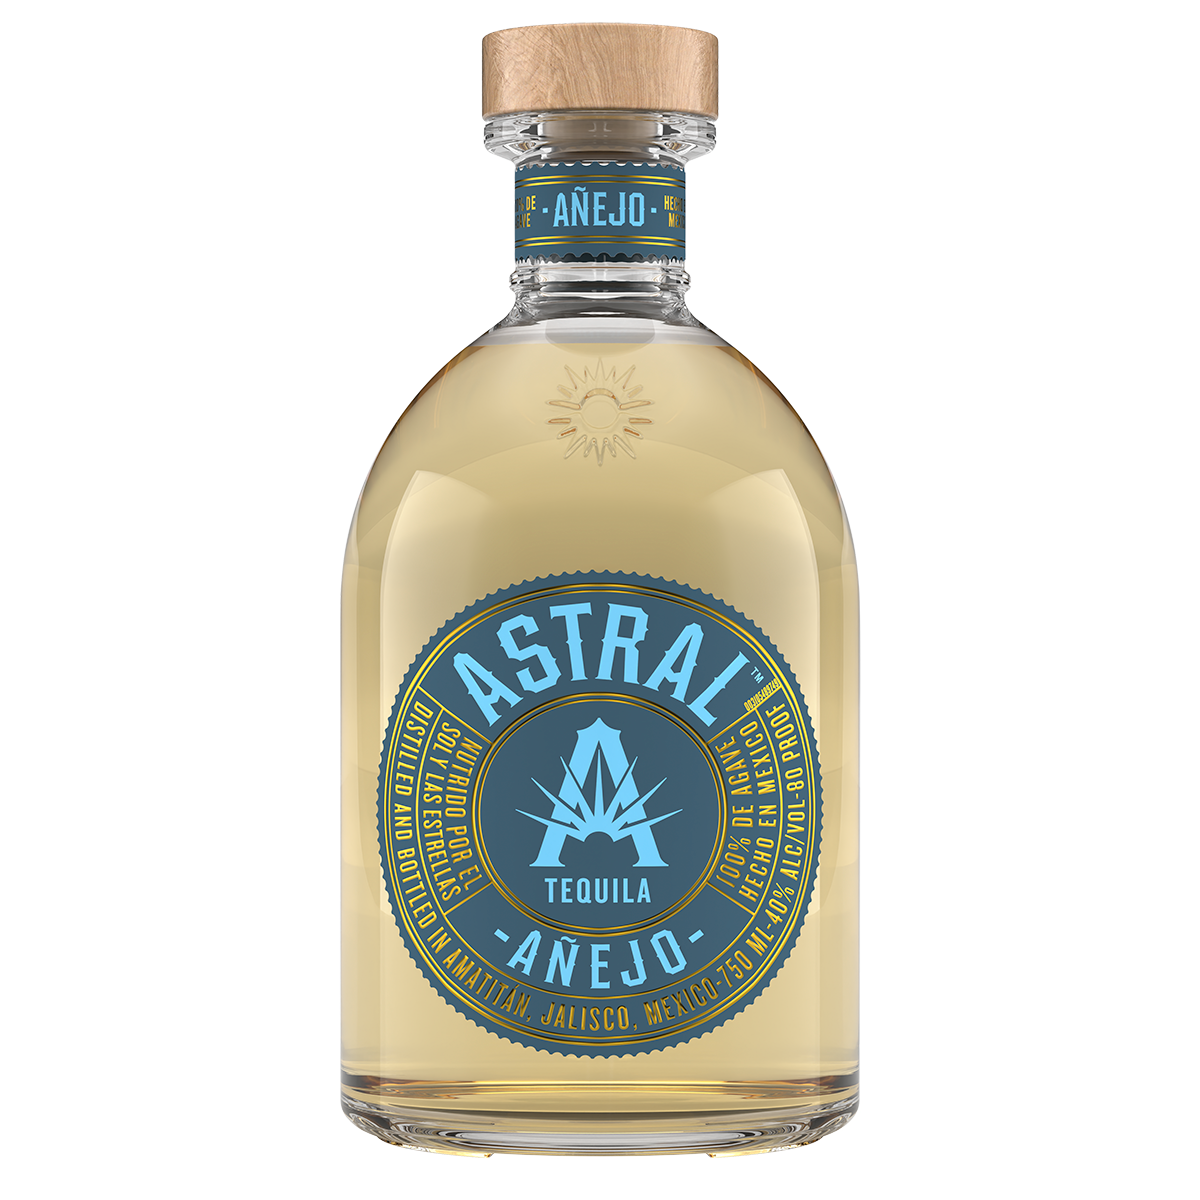 Bottle of Astral Tequila Añejo